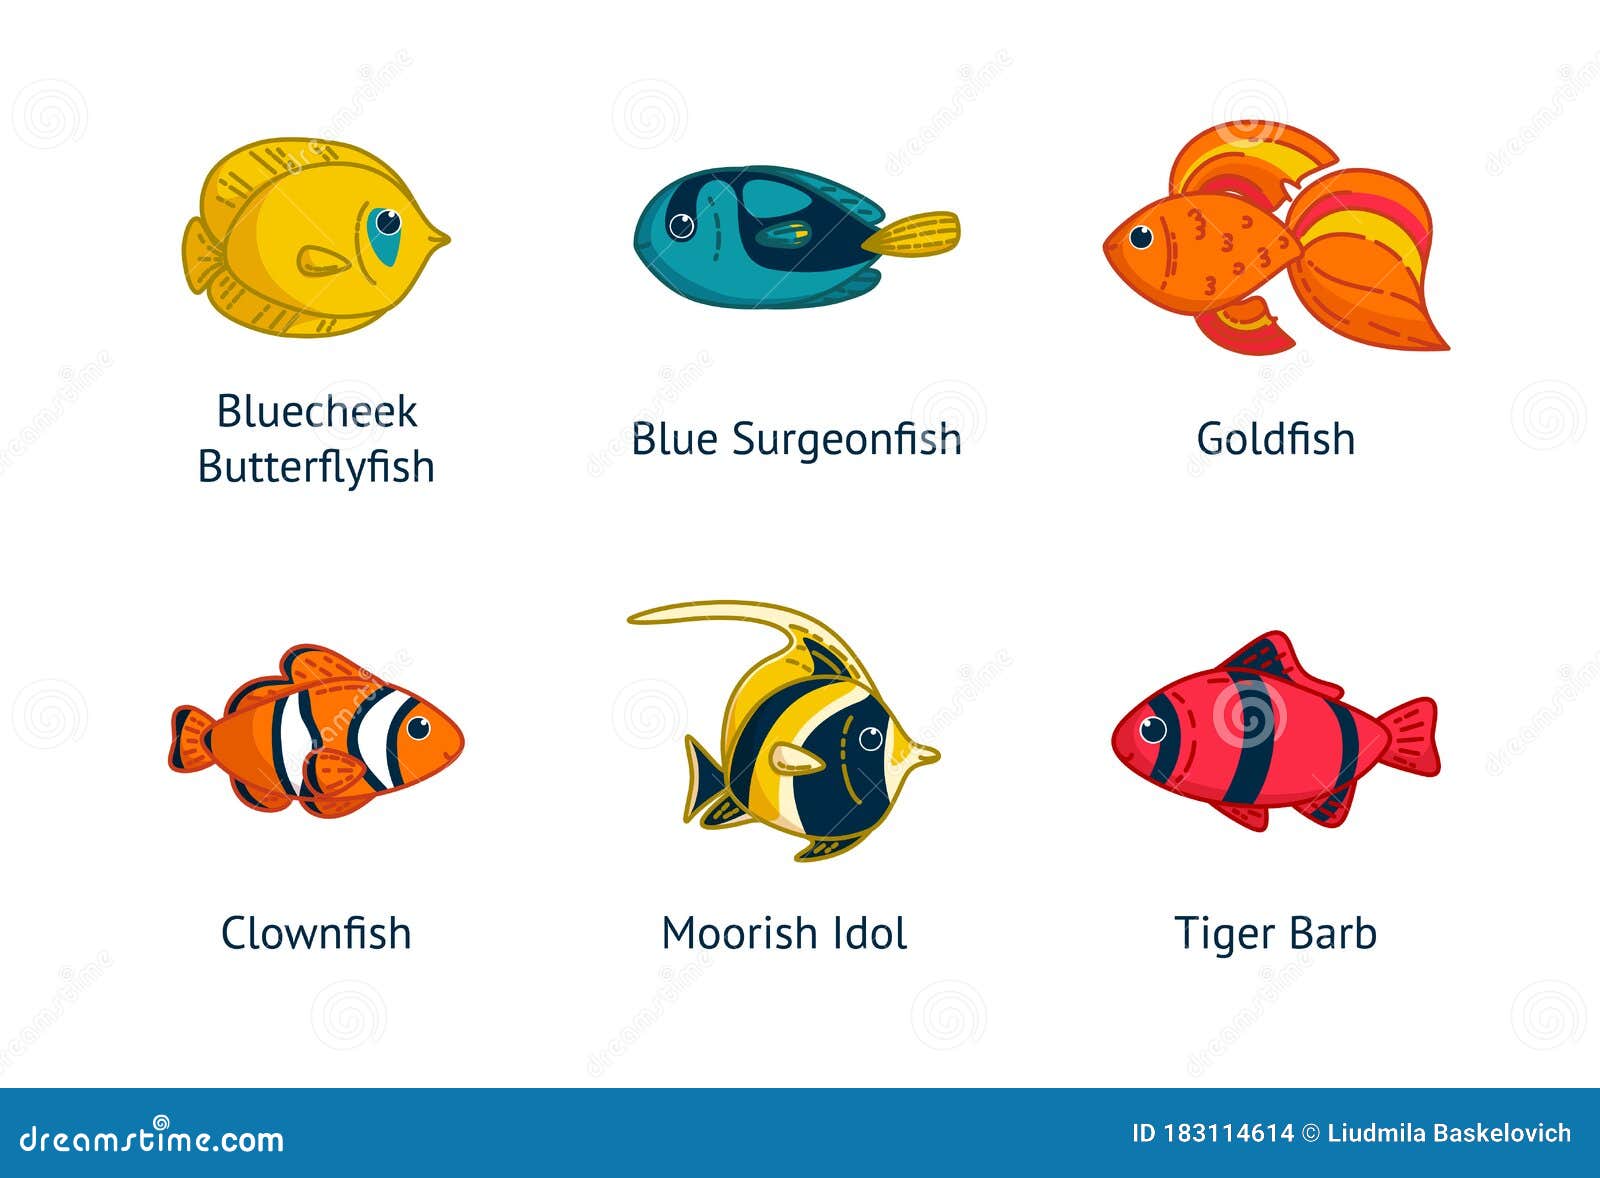 Про рыбу на английском. Имена для рыбок. Имена для рыбок мальчиков. Клички для рыб. Красивые имена для рыбок.